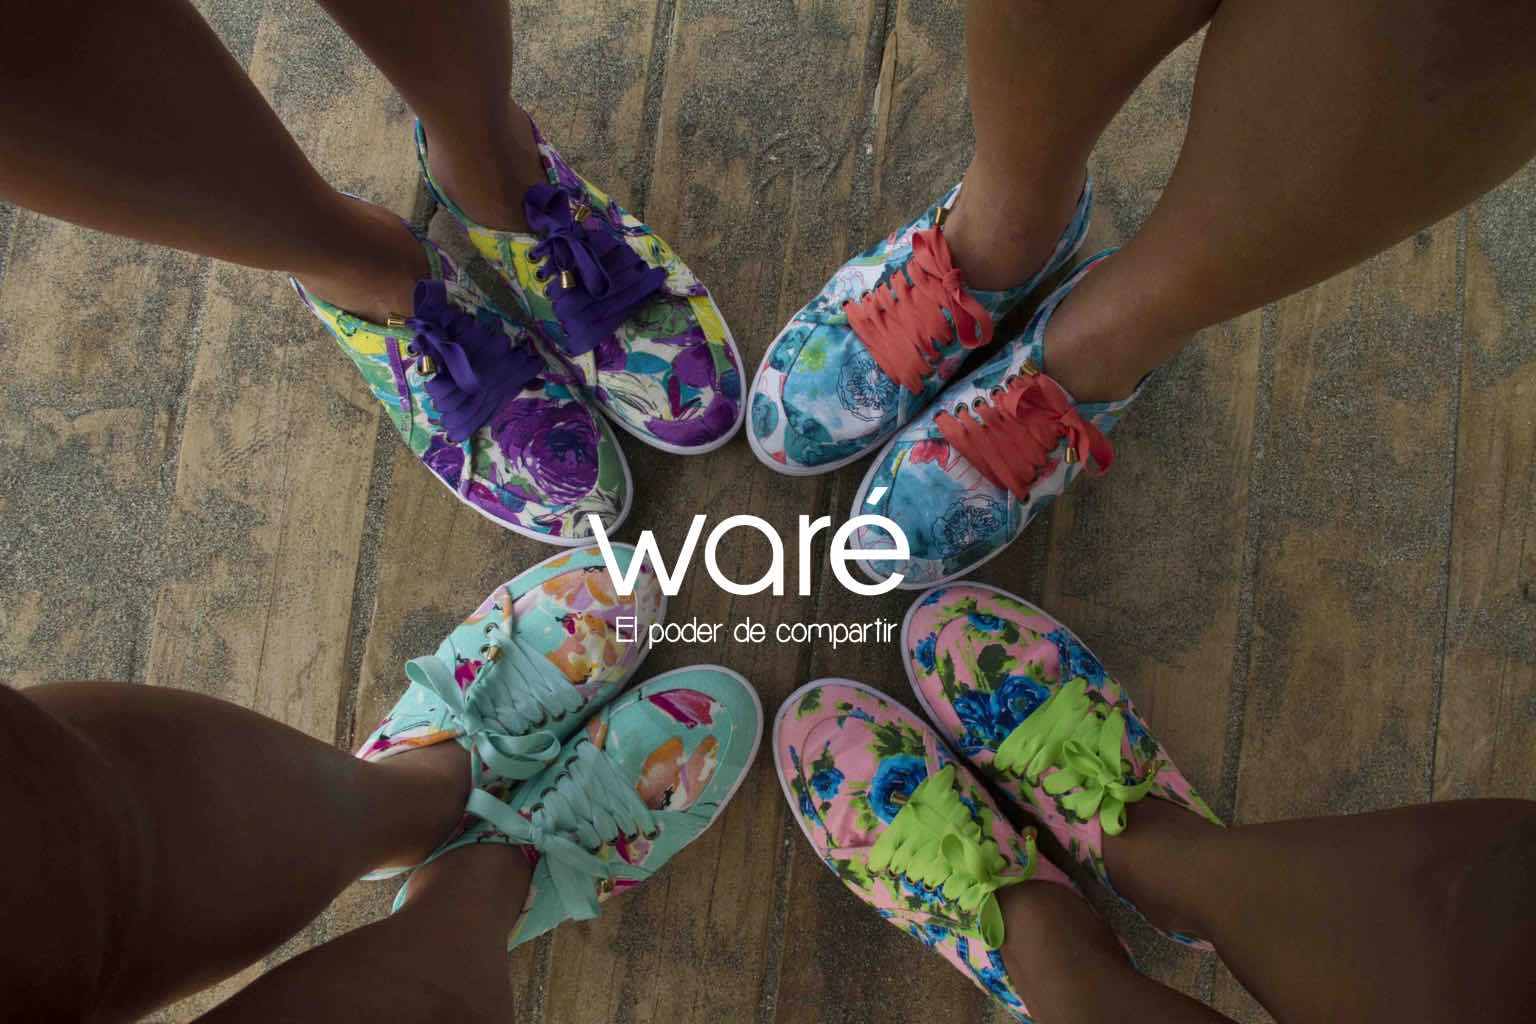 Zapatos Waré: moda, proyección social e nacional - Moda 2.0: Blog de moda colombiano